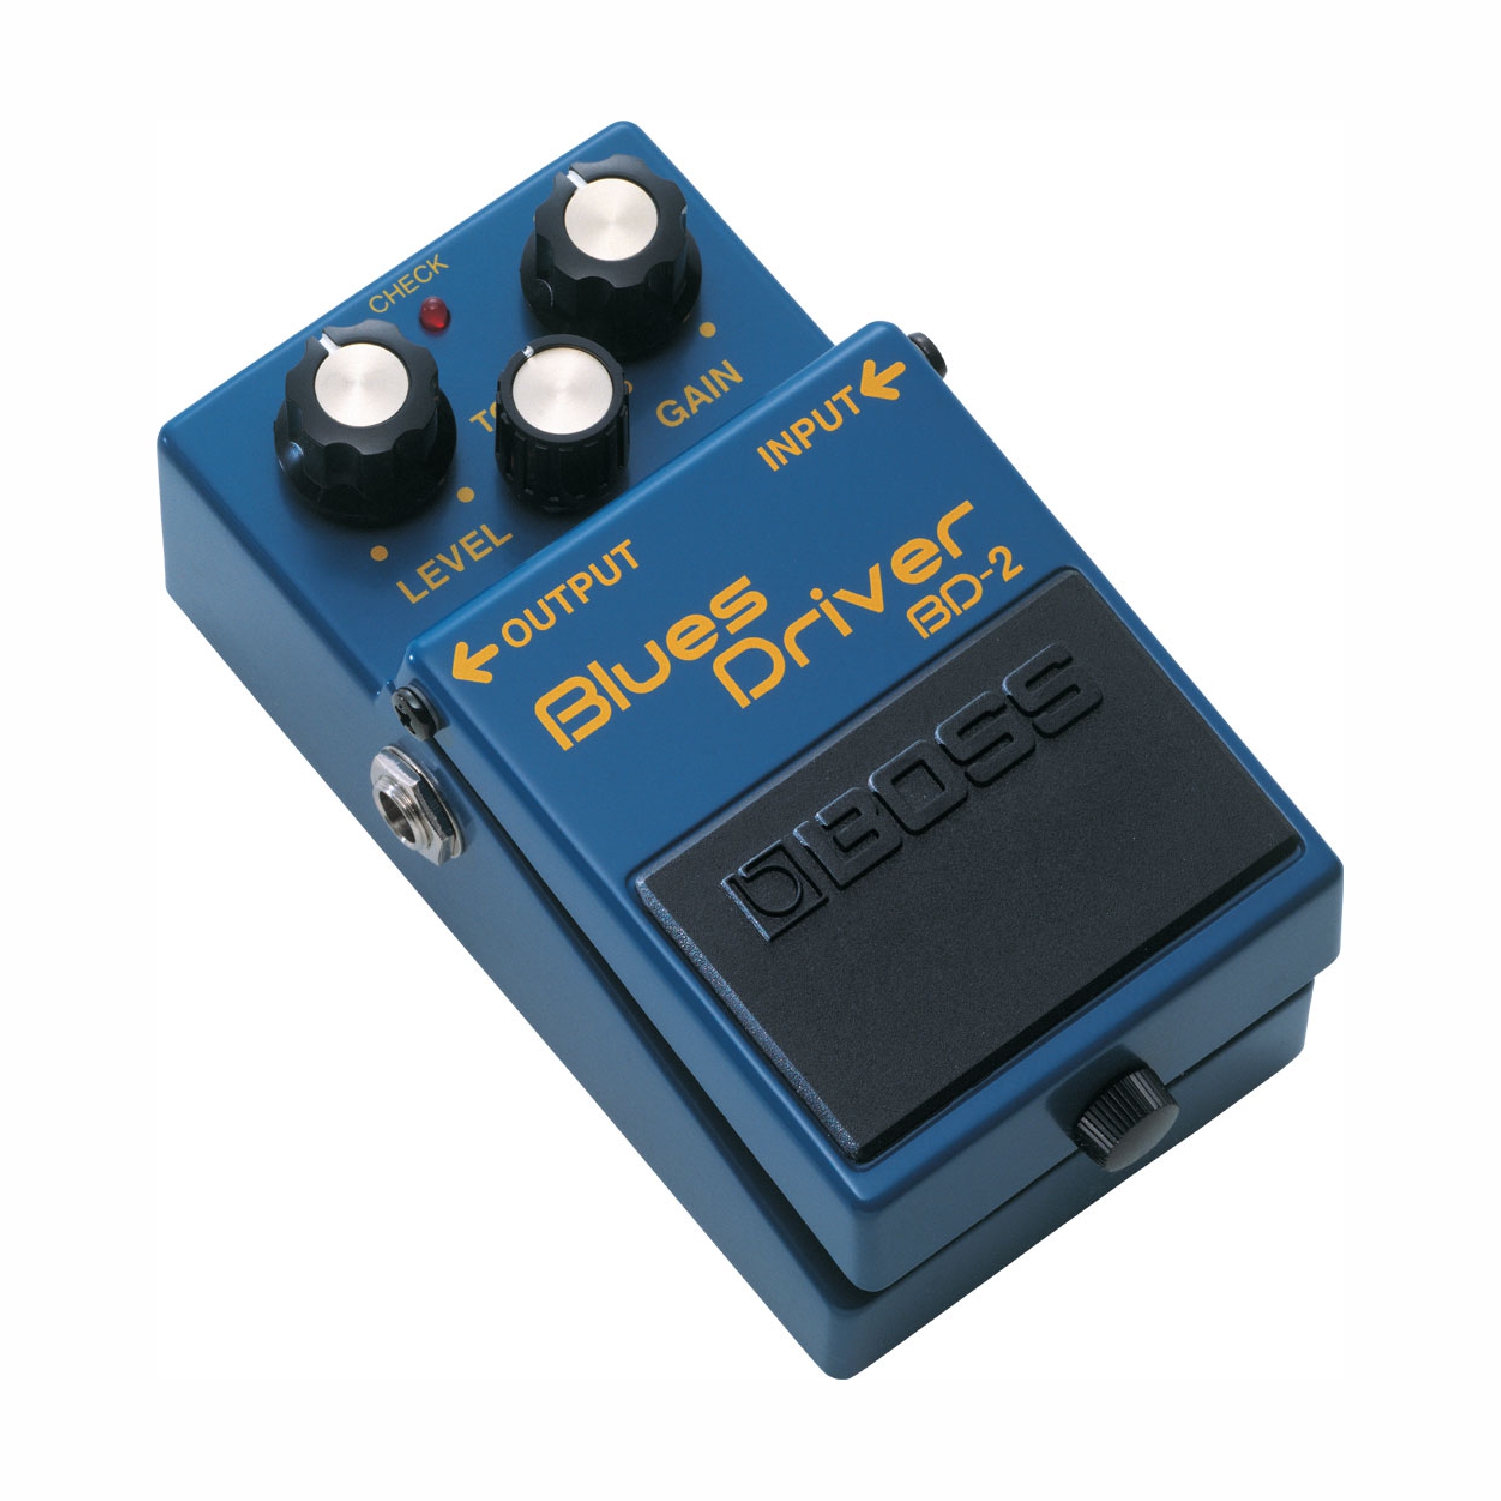 BD-2 (Blues Driver)